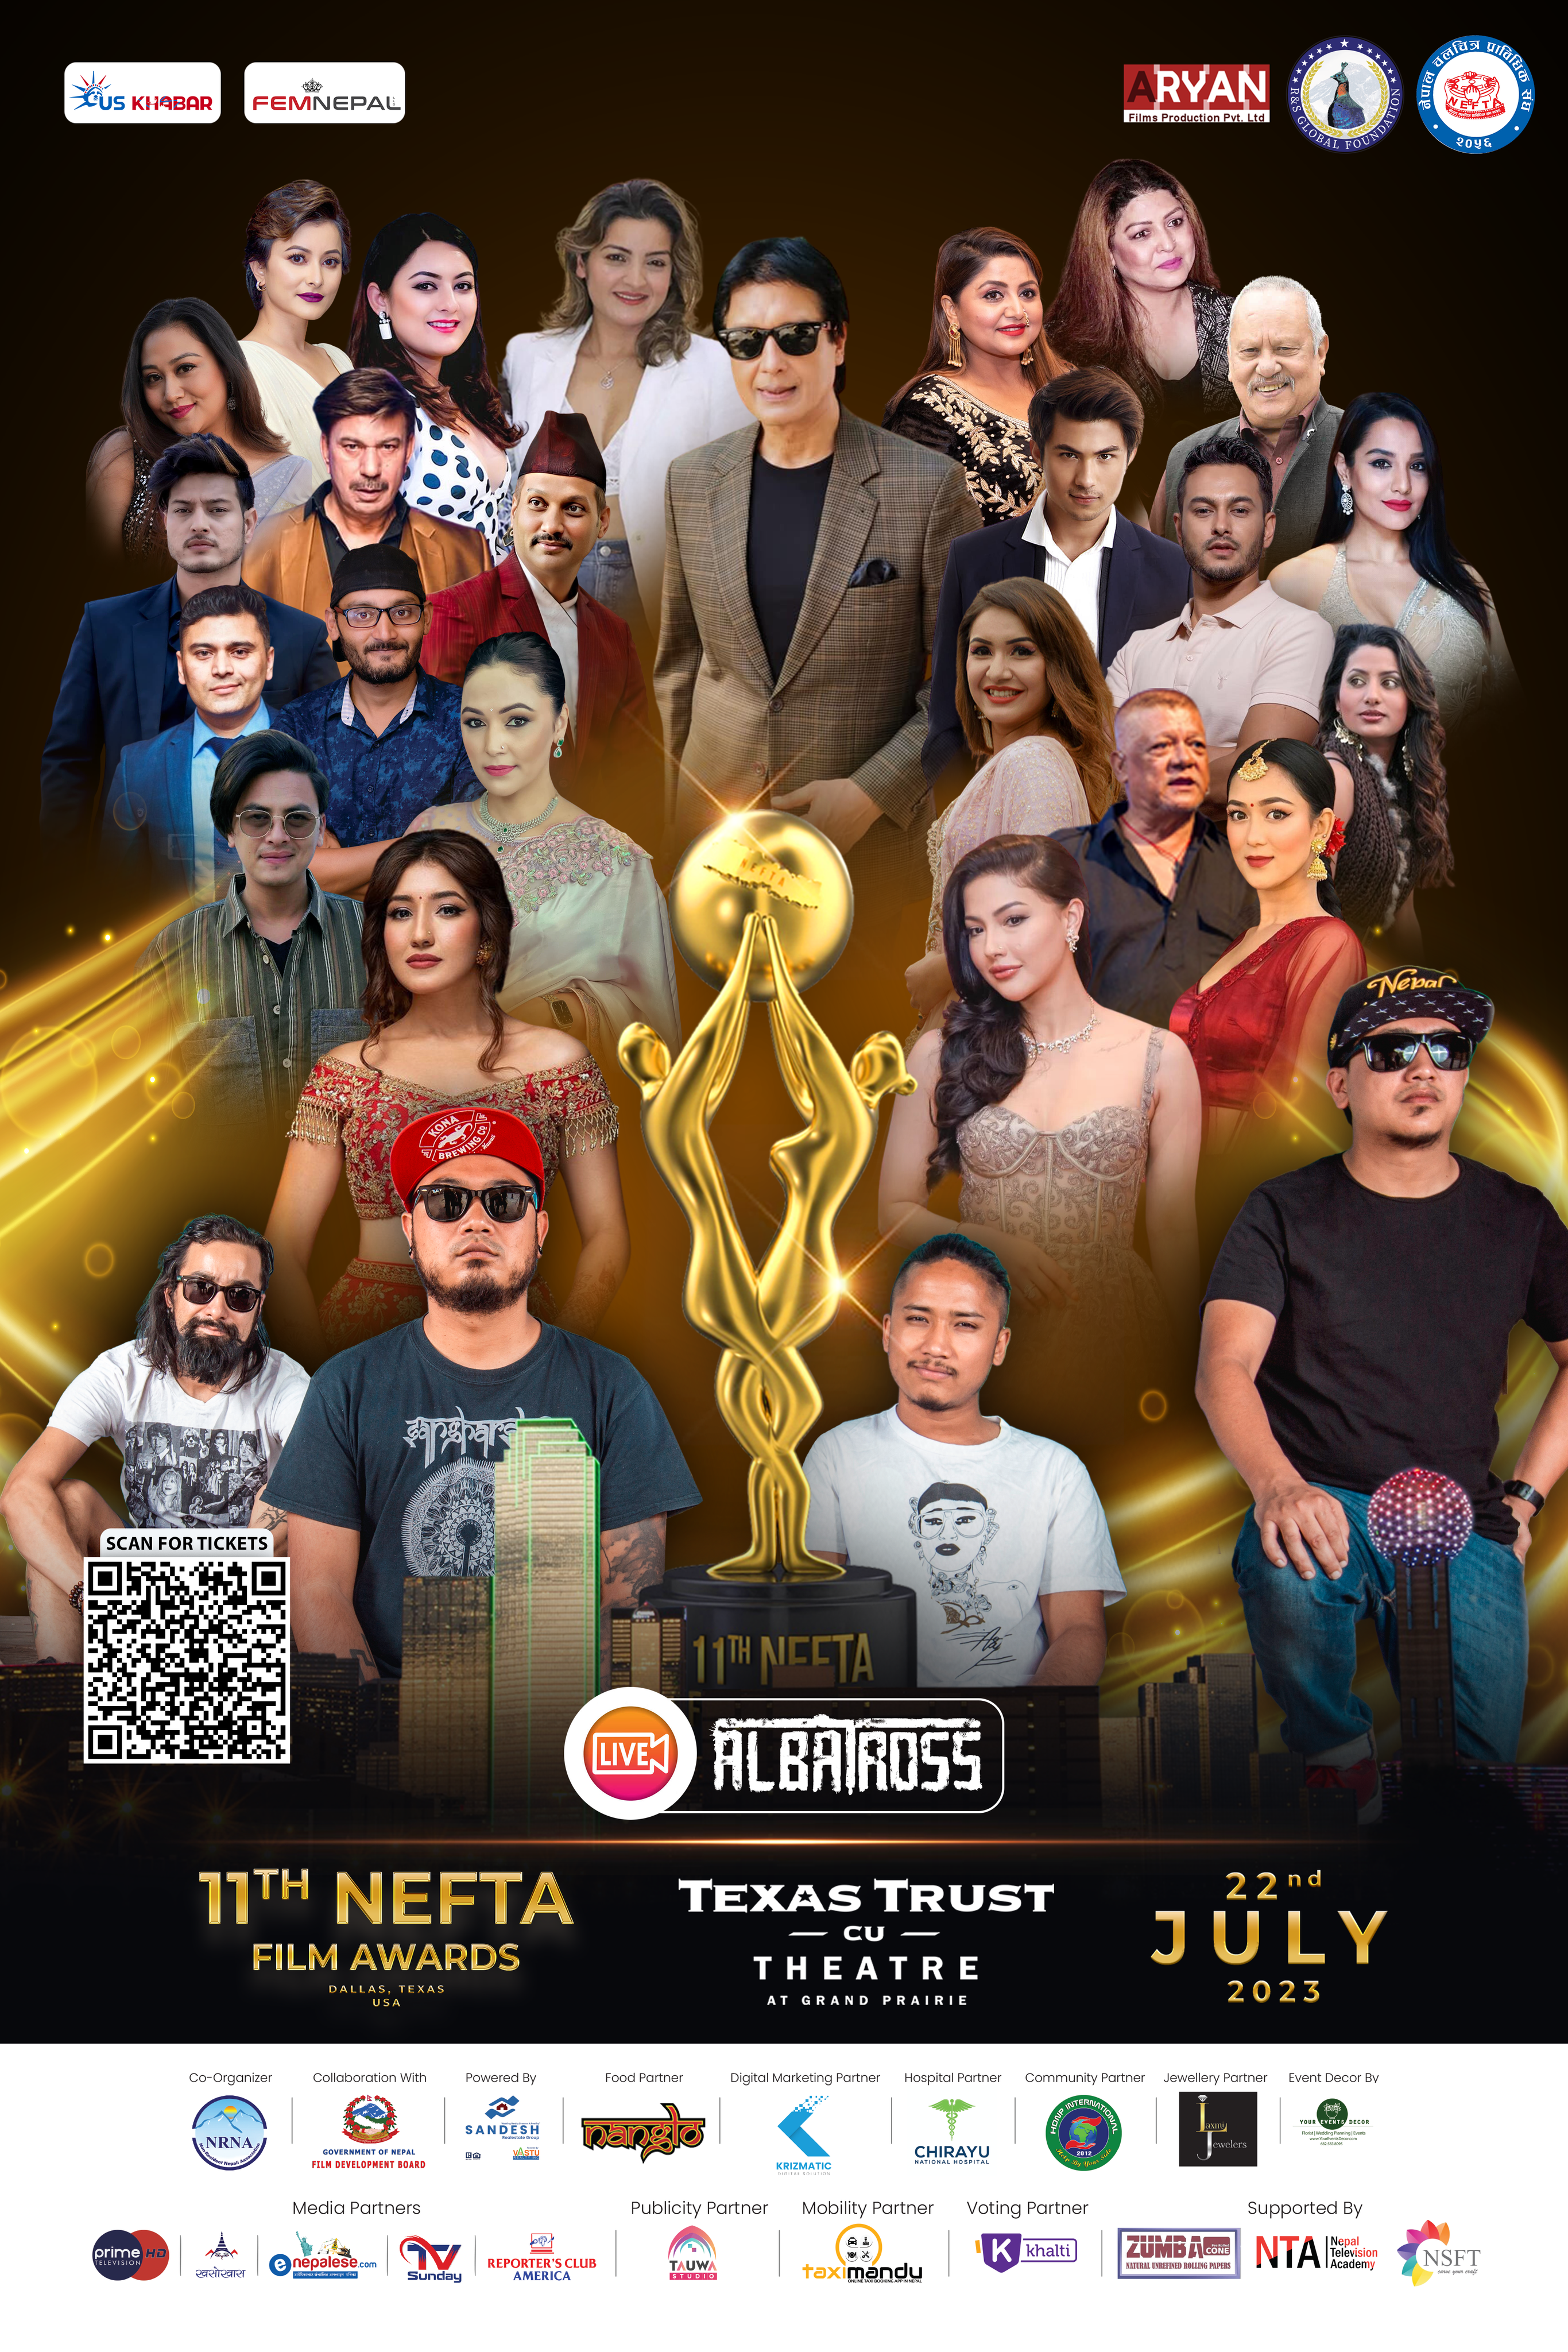 11th nefta film awards_femnepal